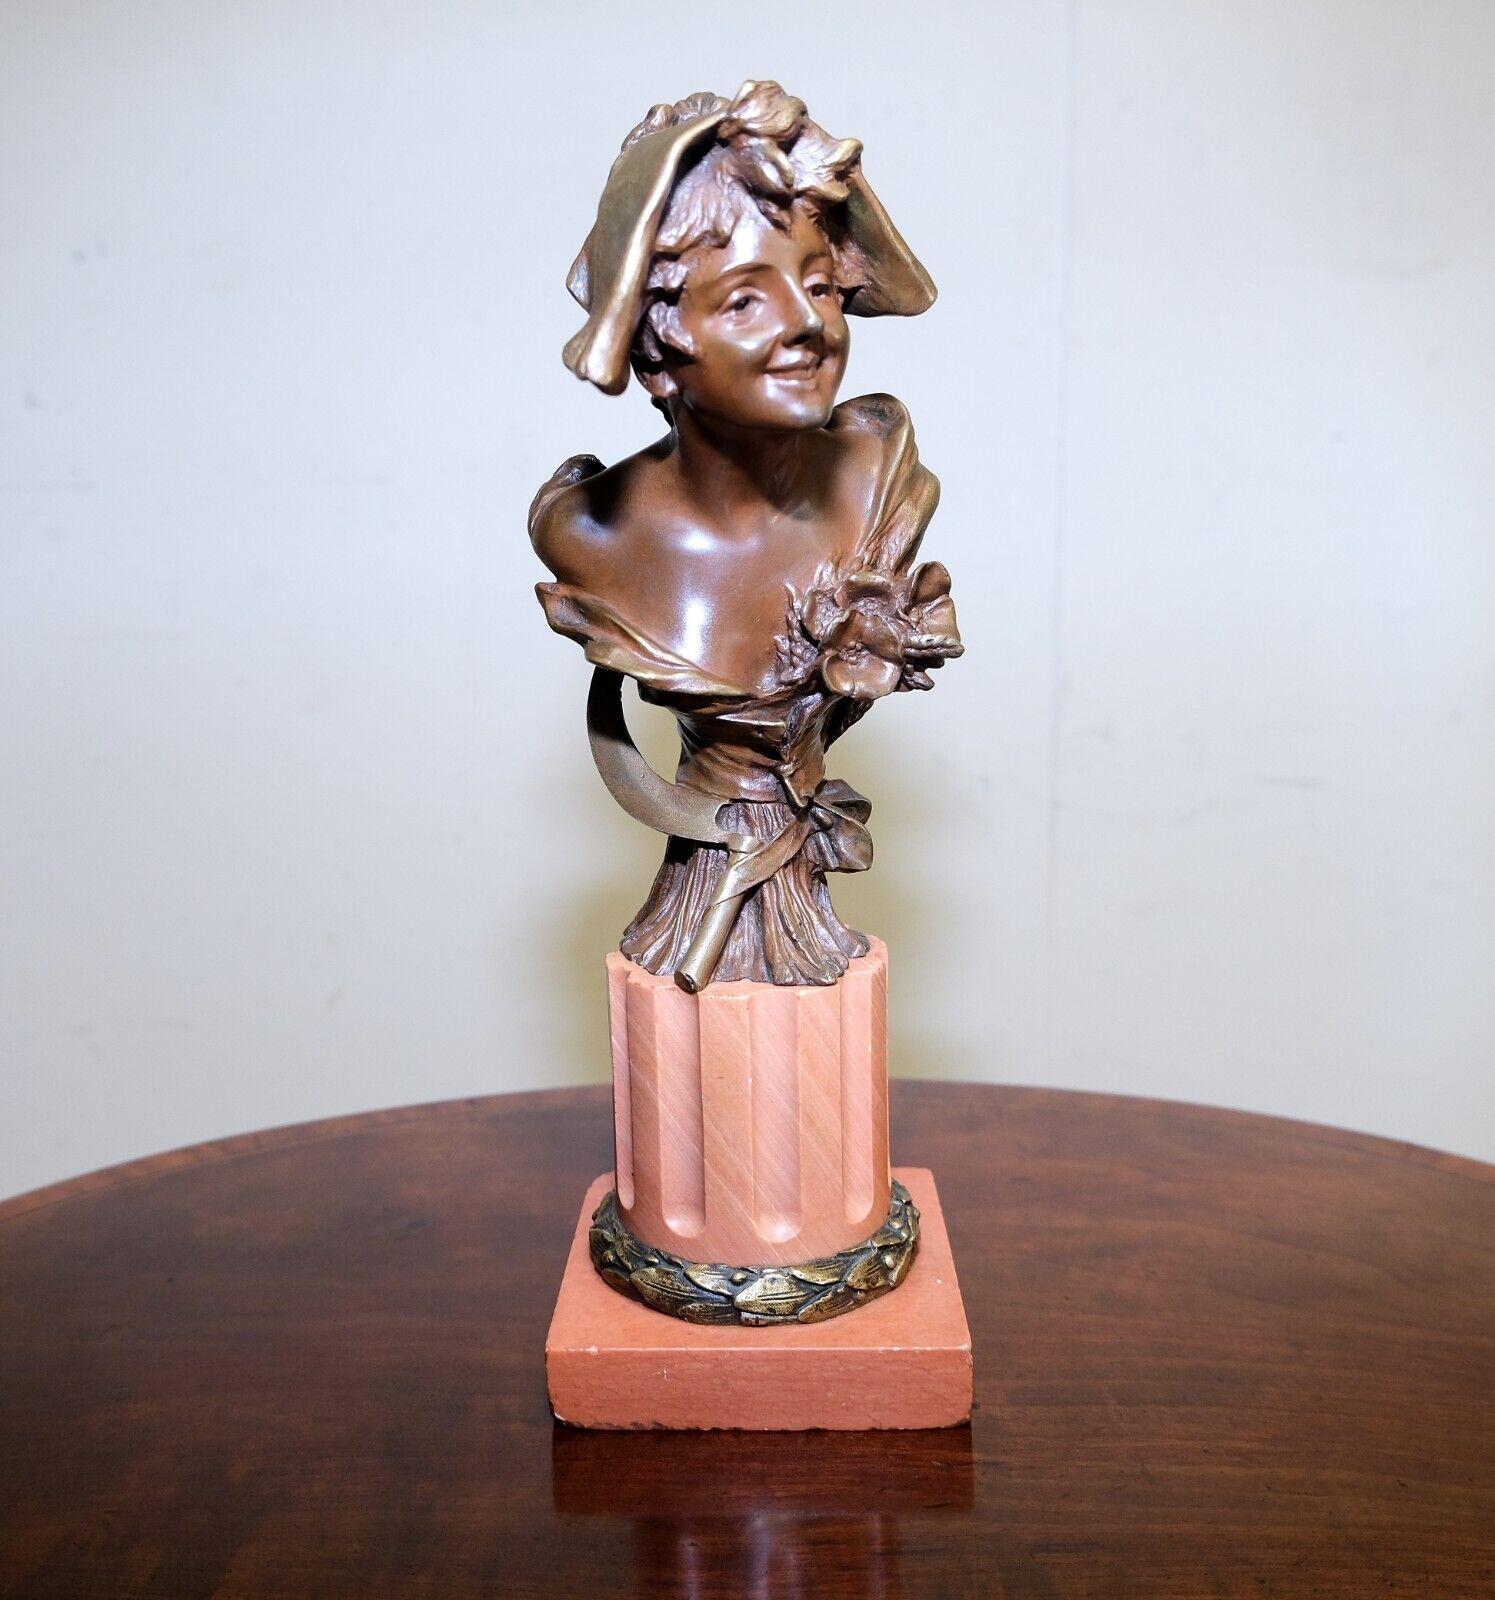 Nous sommes ravis de proposer à la vente ce superbe bronze Art Nouveau du grand designer belge Georges Van Der Straeten.

Cet étonnant et original buste patiné et doré, dame d'été au corsage orné de fleurs. Il repose sur une base cylindrique en